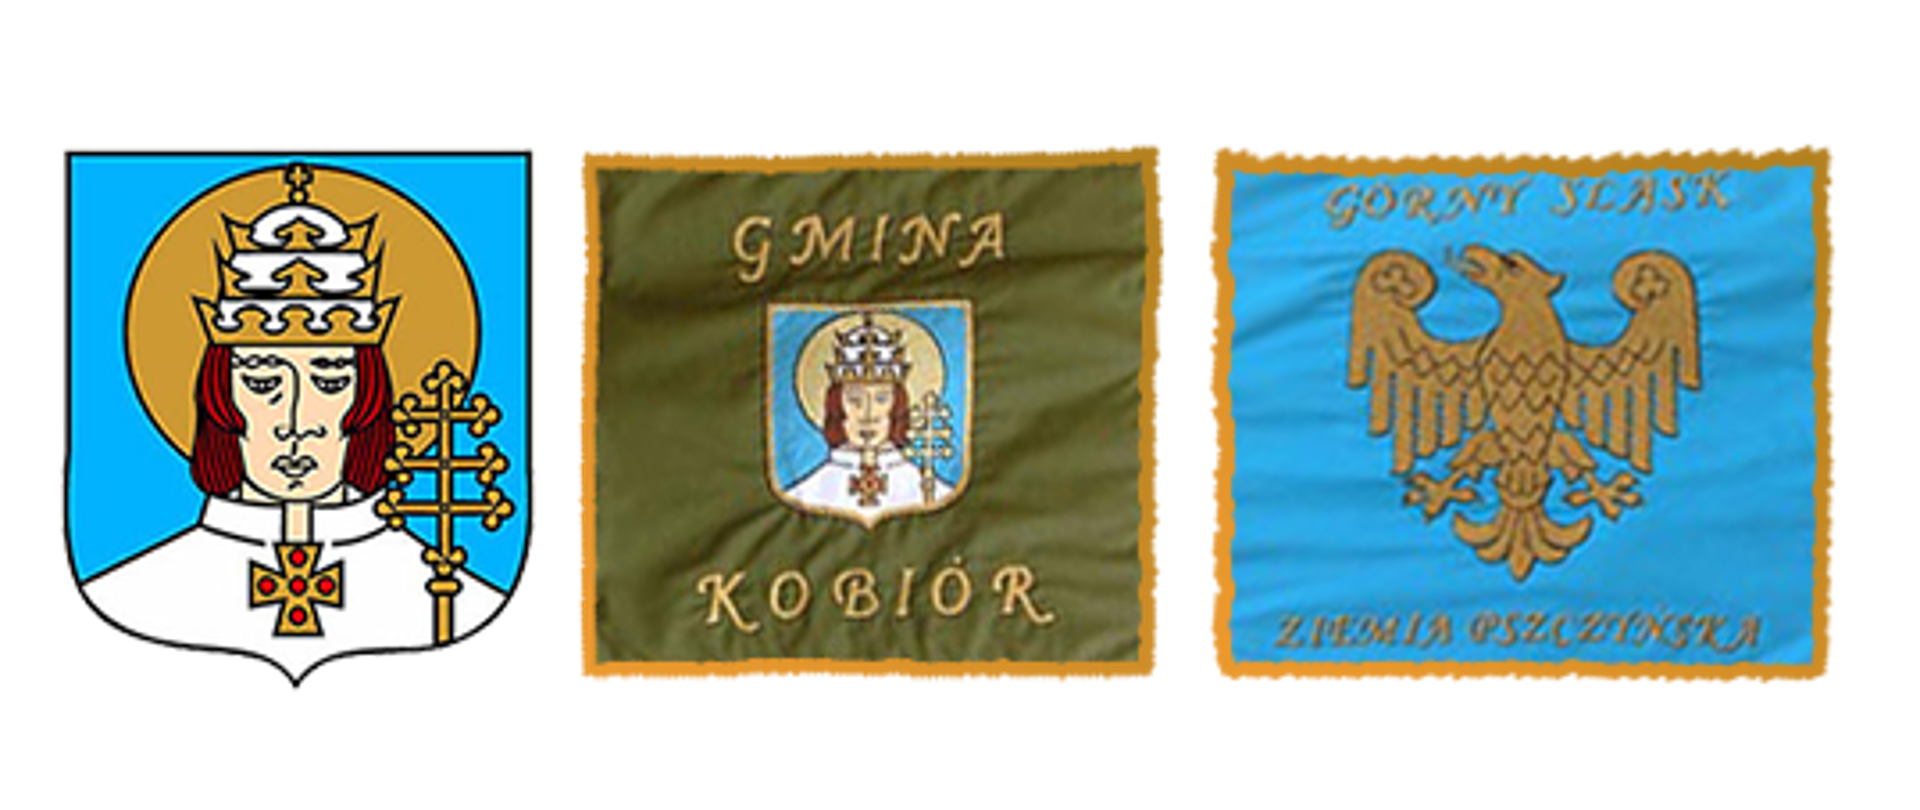 Od lewej wizerunek św. Urbana na niebieskim tle, w środku na zielonym tle napis Gmina Kobiór i wizerunek św. Urbana, po prawej na niebielskim tle orzeł oraz napis Górny Śląsk Ziemia Pszczyńska